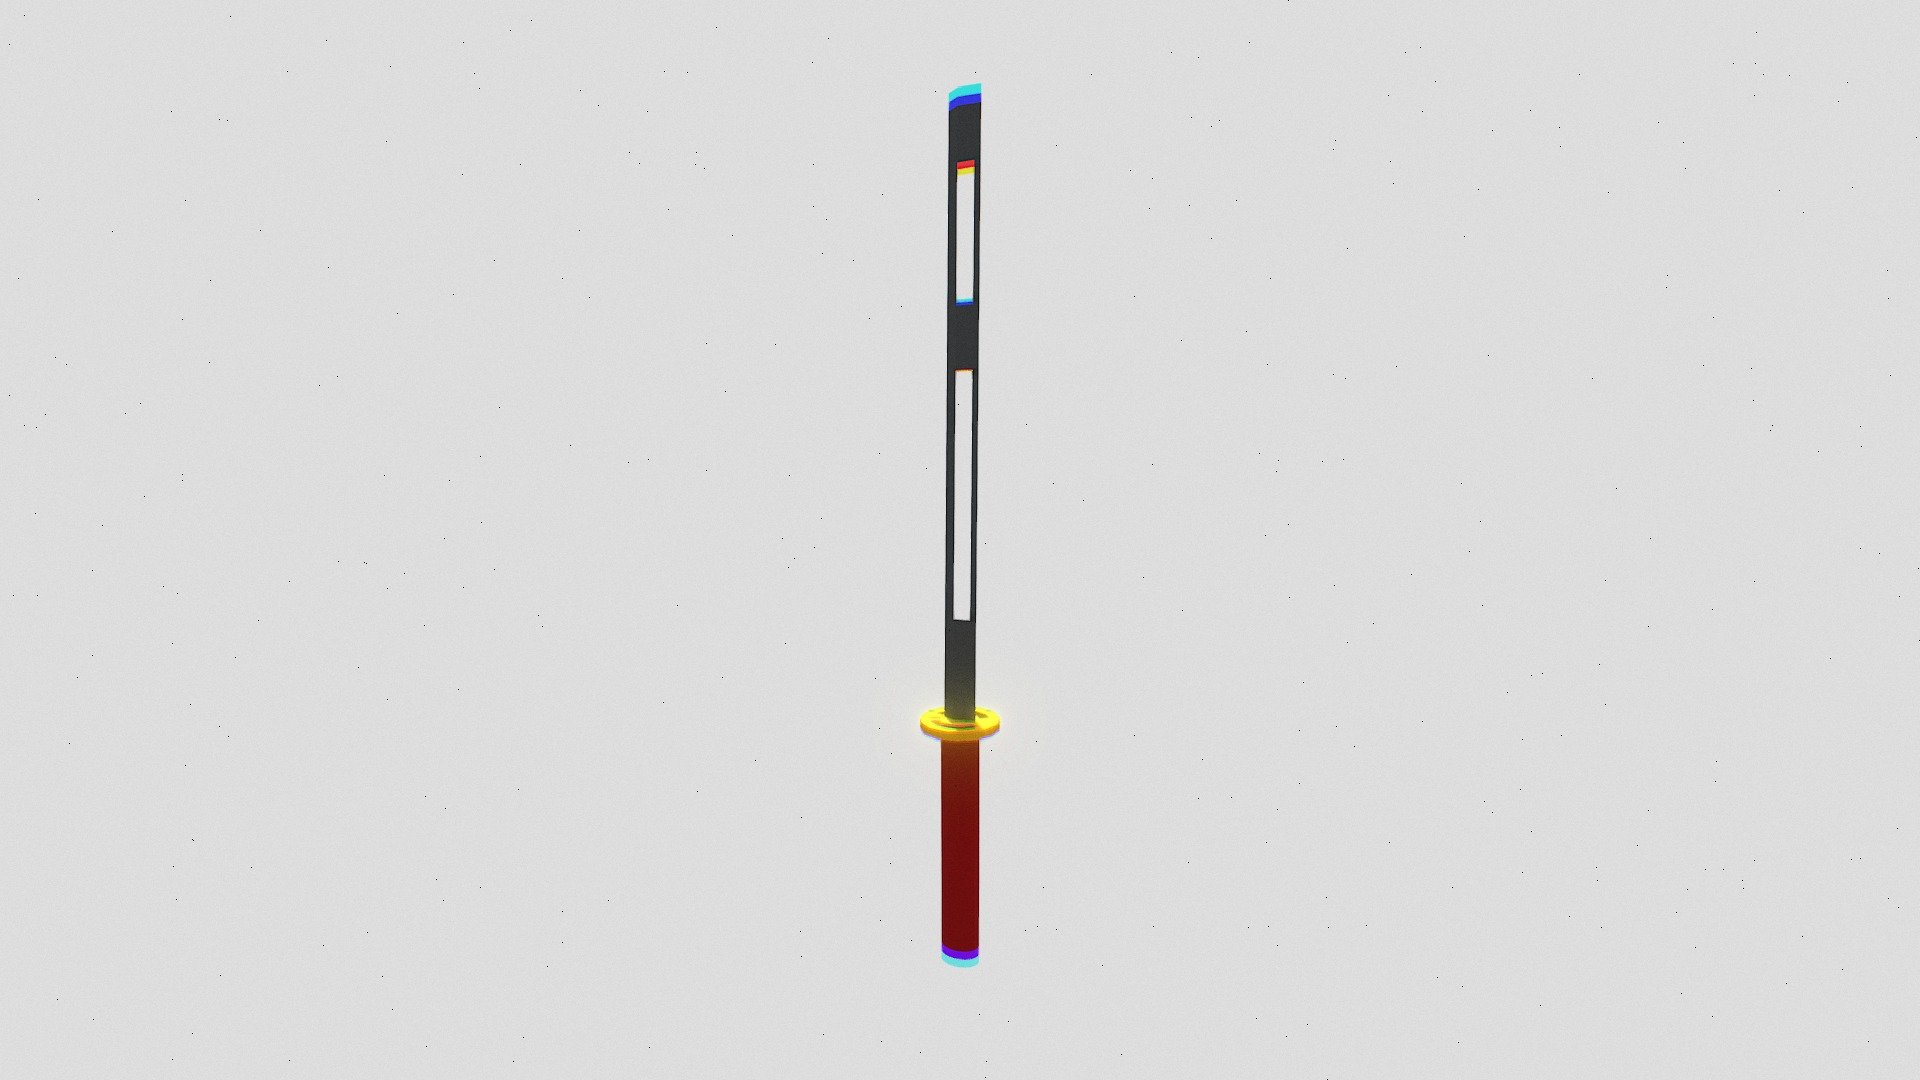 Infinity Edge Sword Fanart - 3D model by Kafu Design (@kafudesign) [08d79d4]